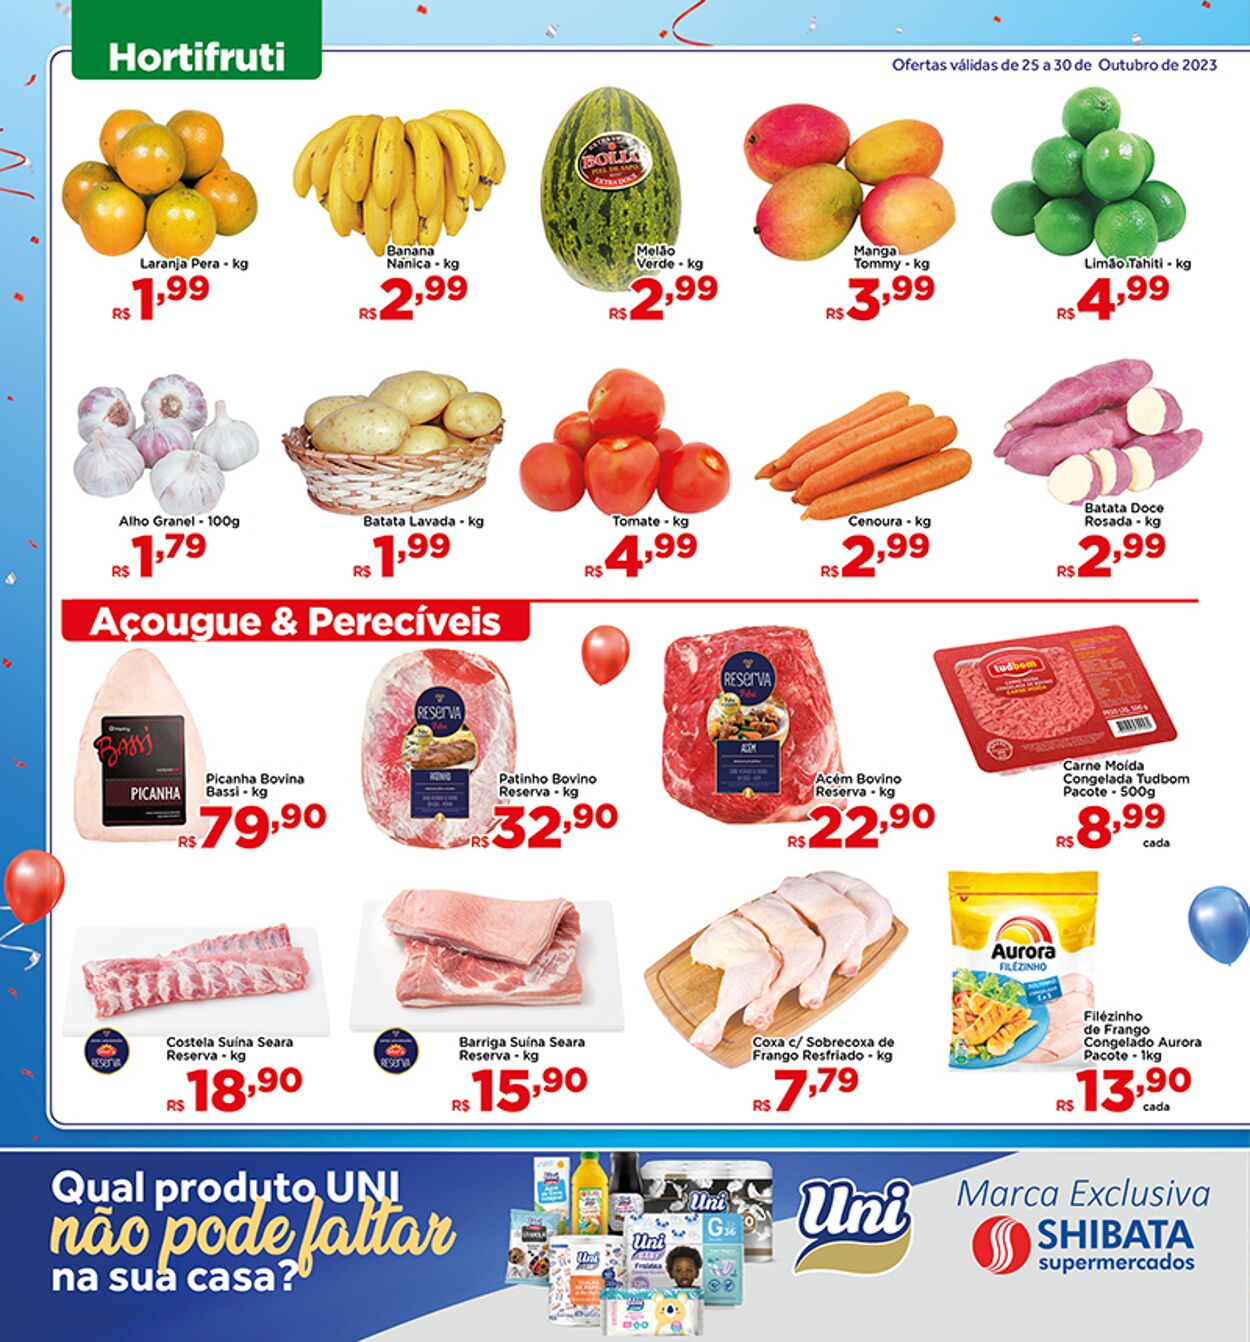 Folheto Shibata Supermercados 25.10.2023 - 30.10.2023